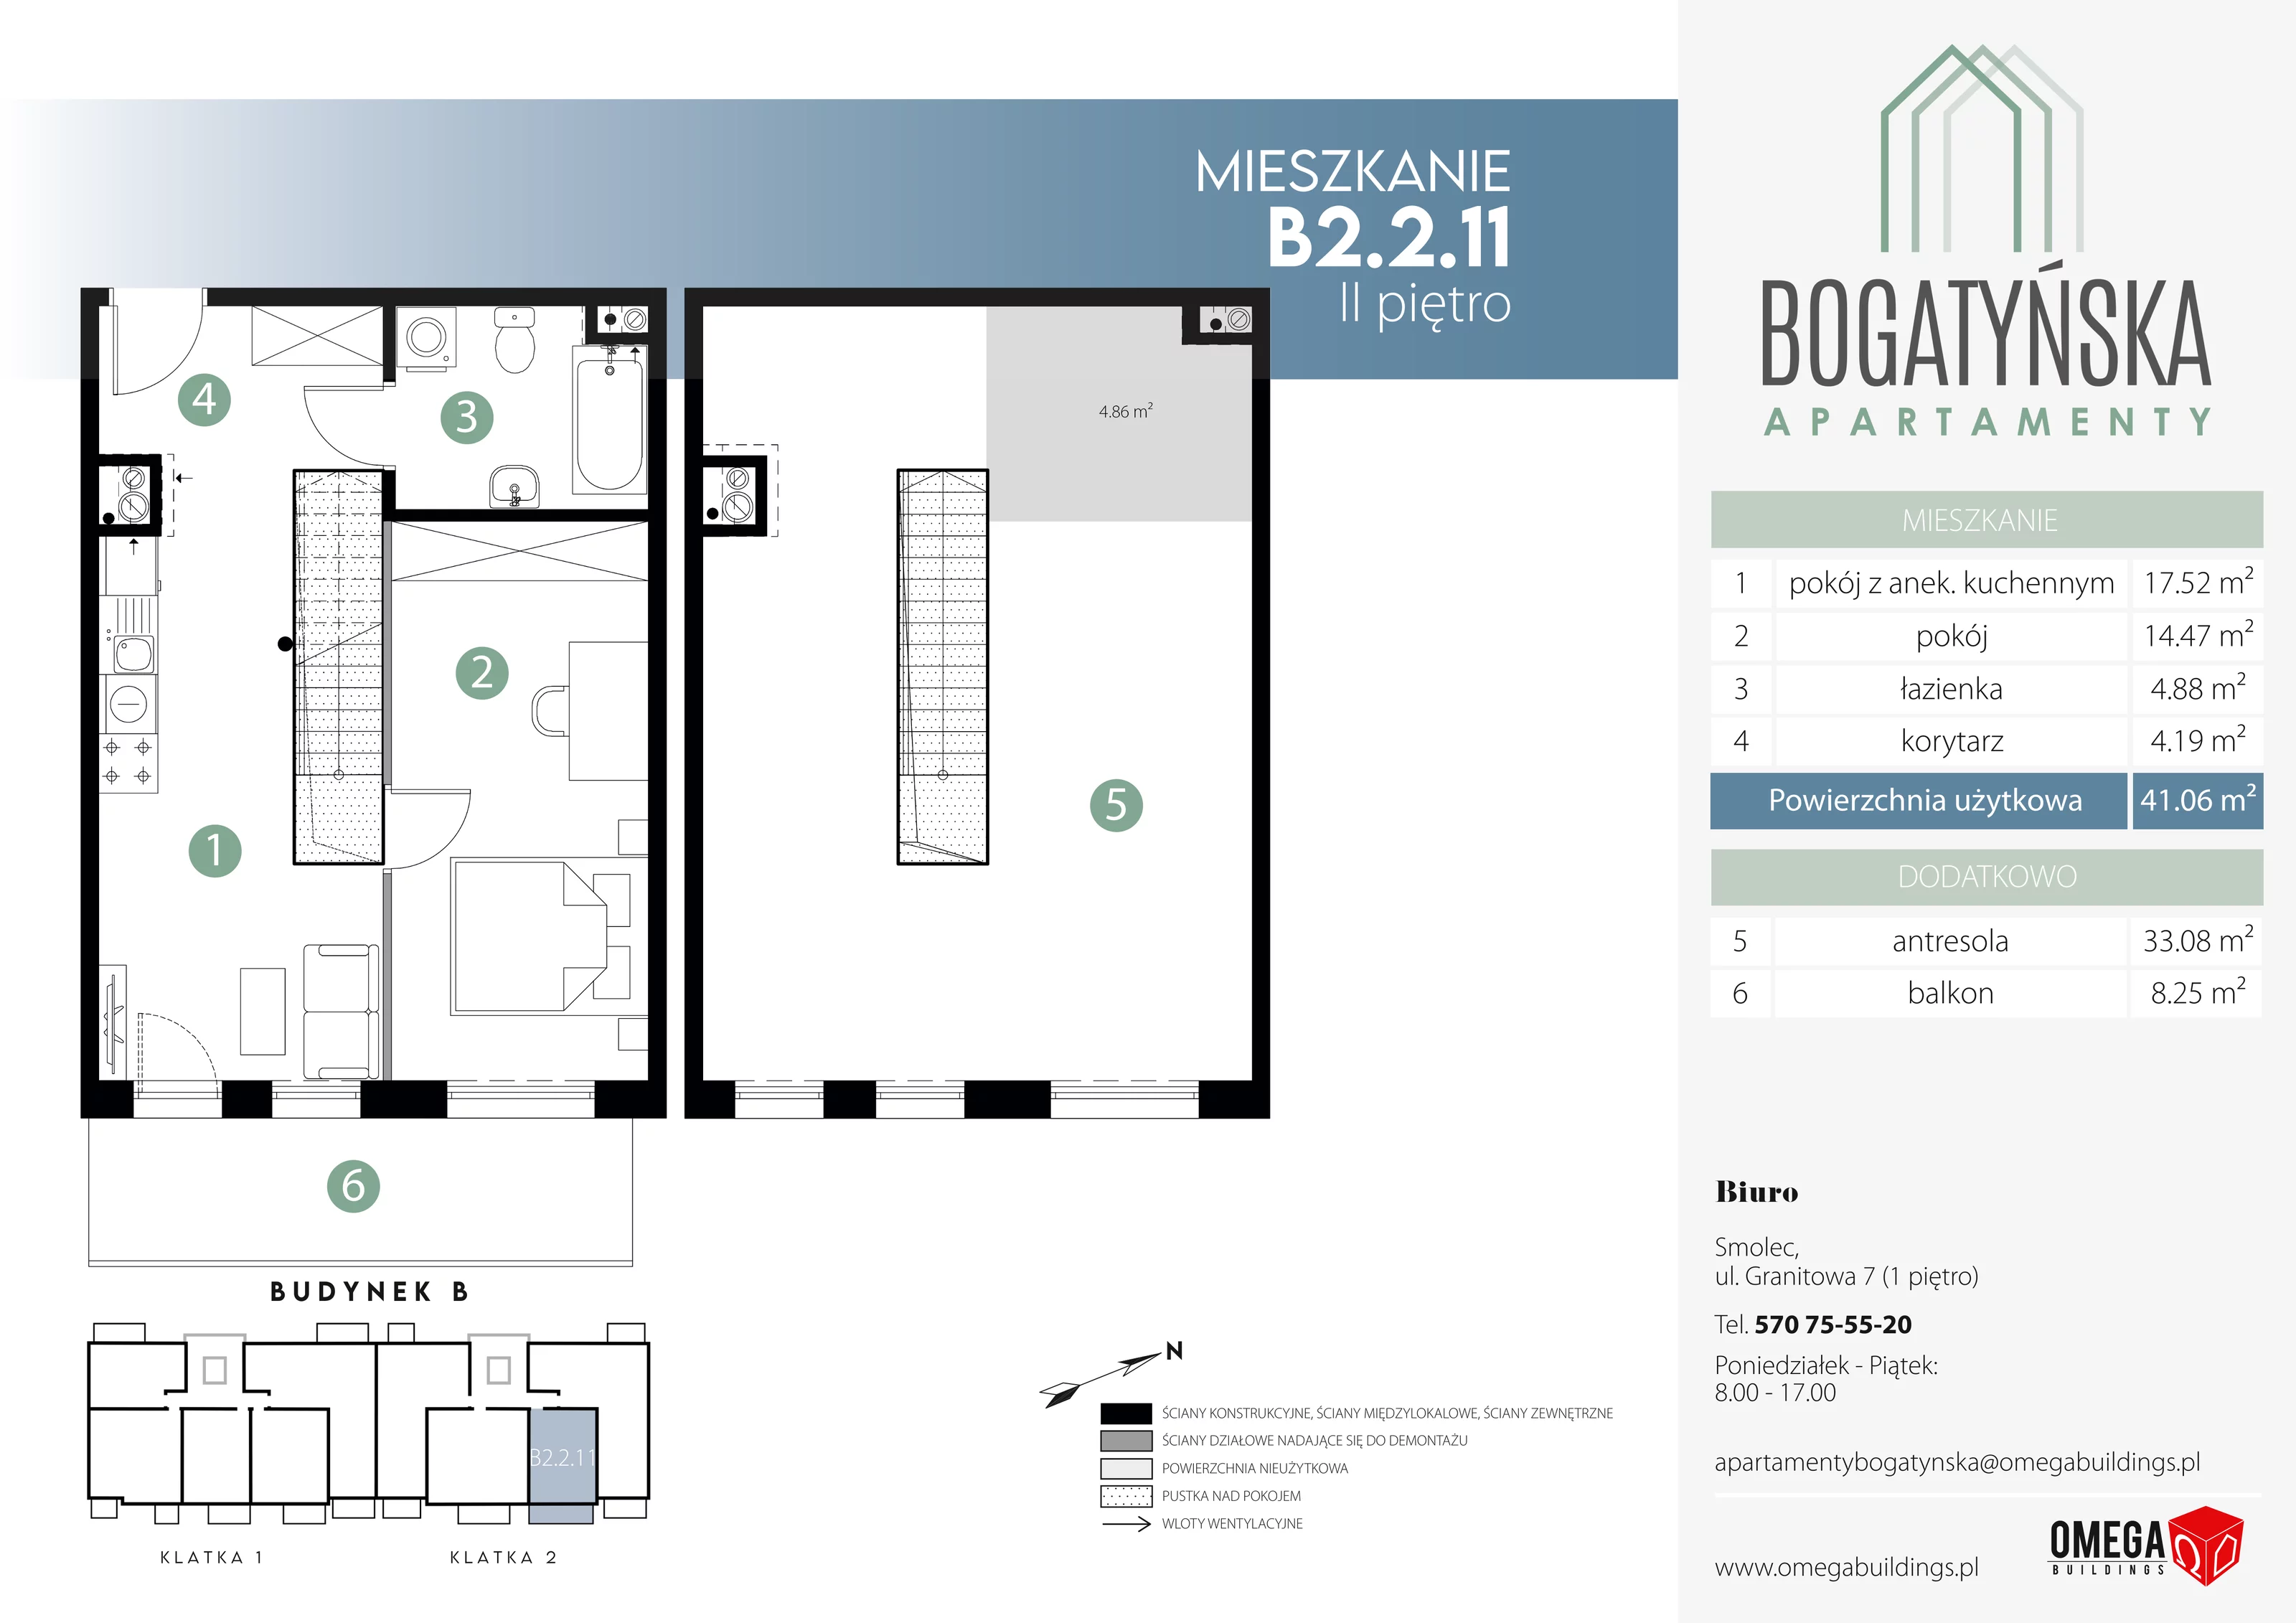 Mieszkanie 79,00 m², piętro 2, oferta nr B2.2.11, Bogatyńska Apartamenty, Wrocław, Maślice, Fabryczna, ul. Bogatyńska